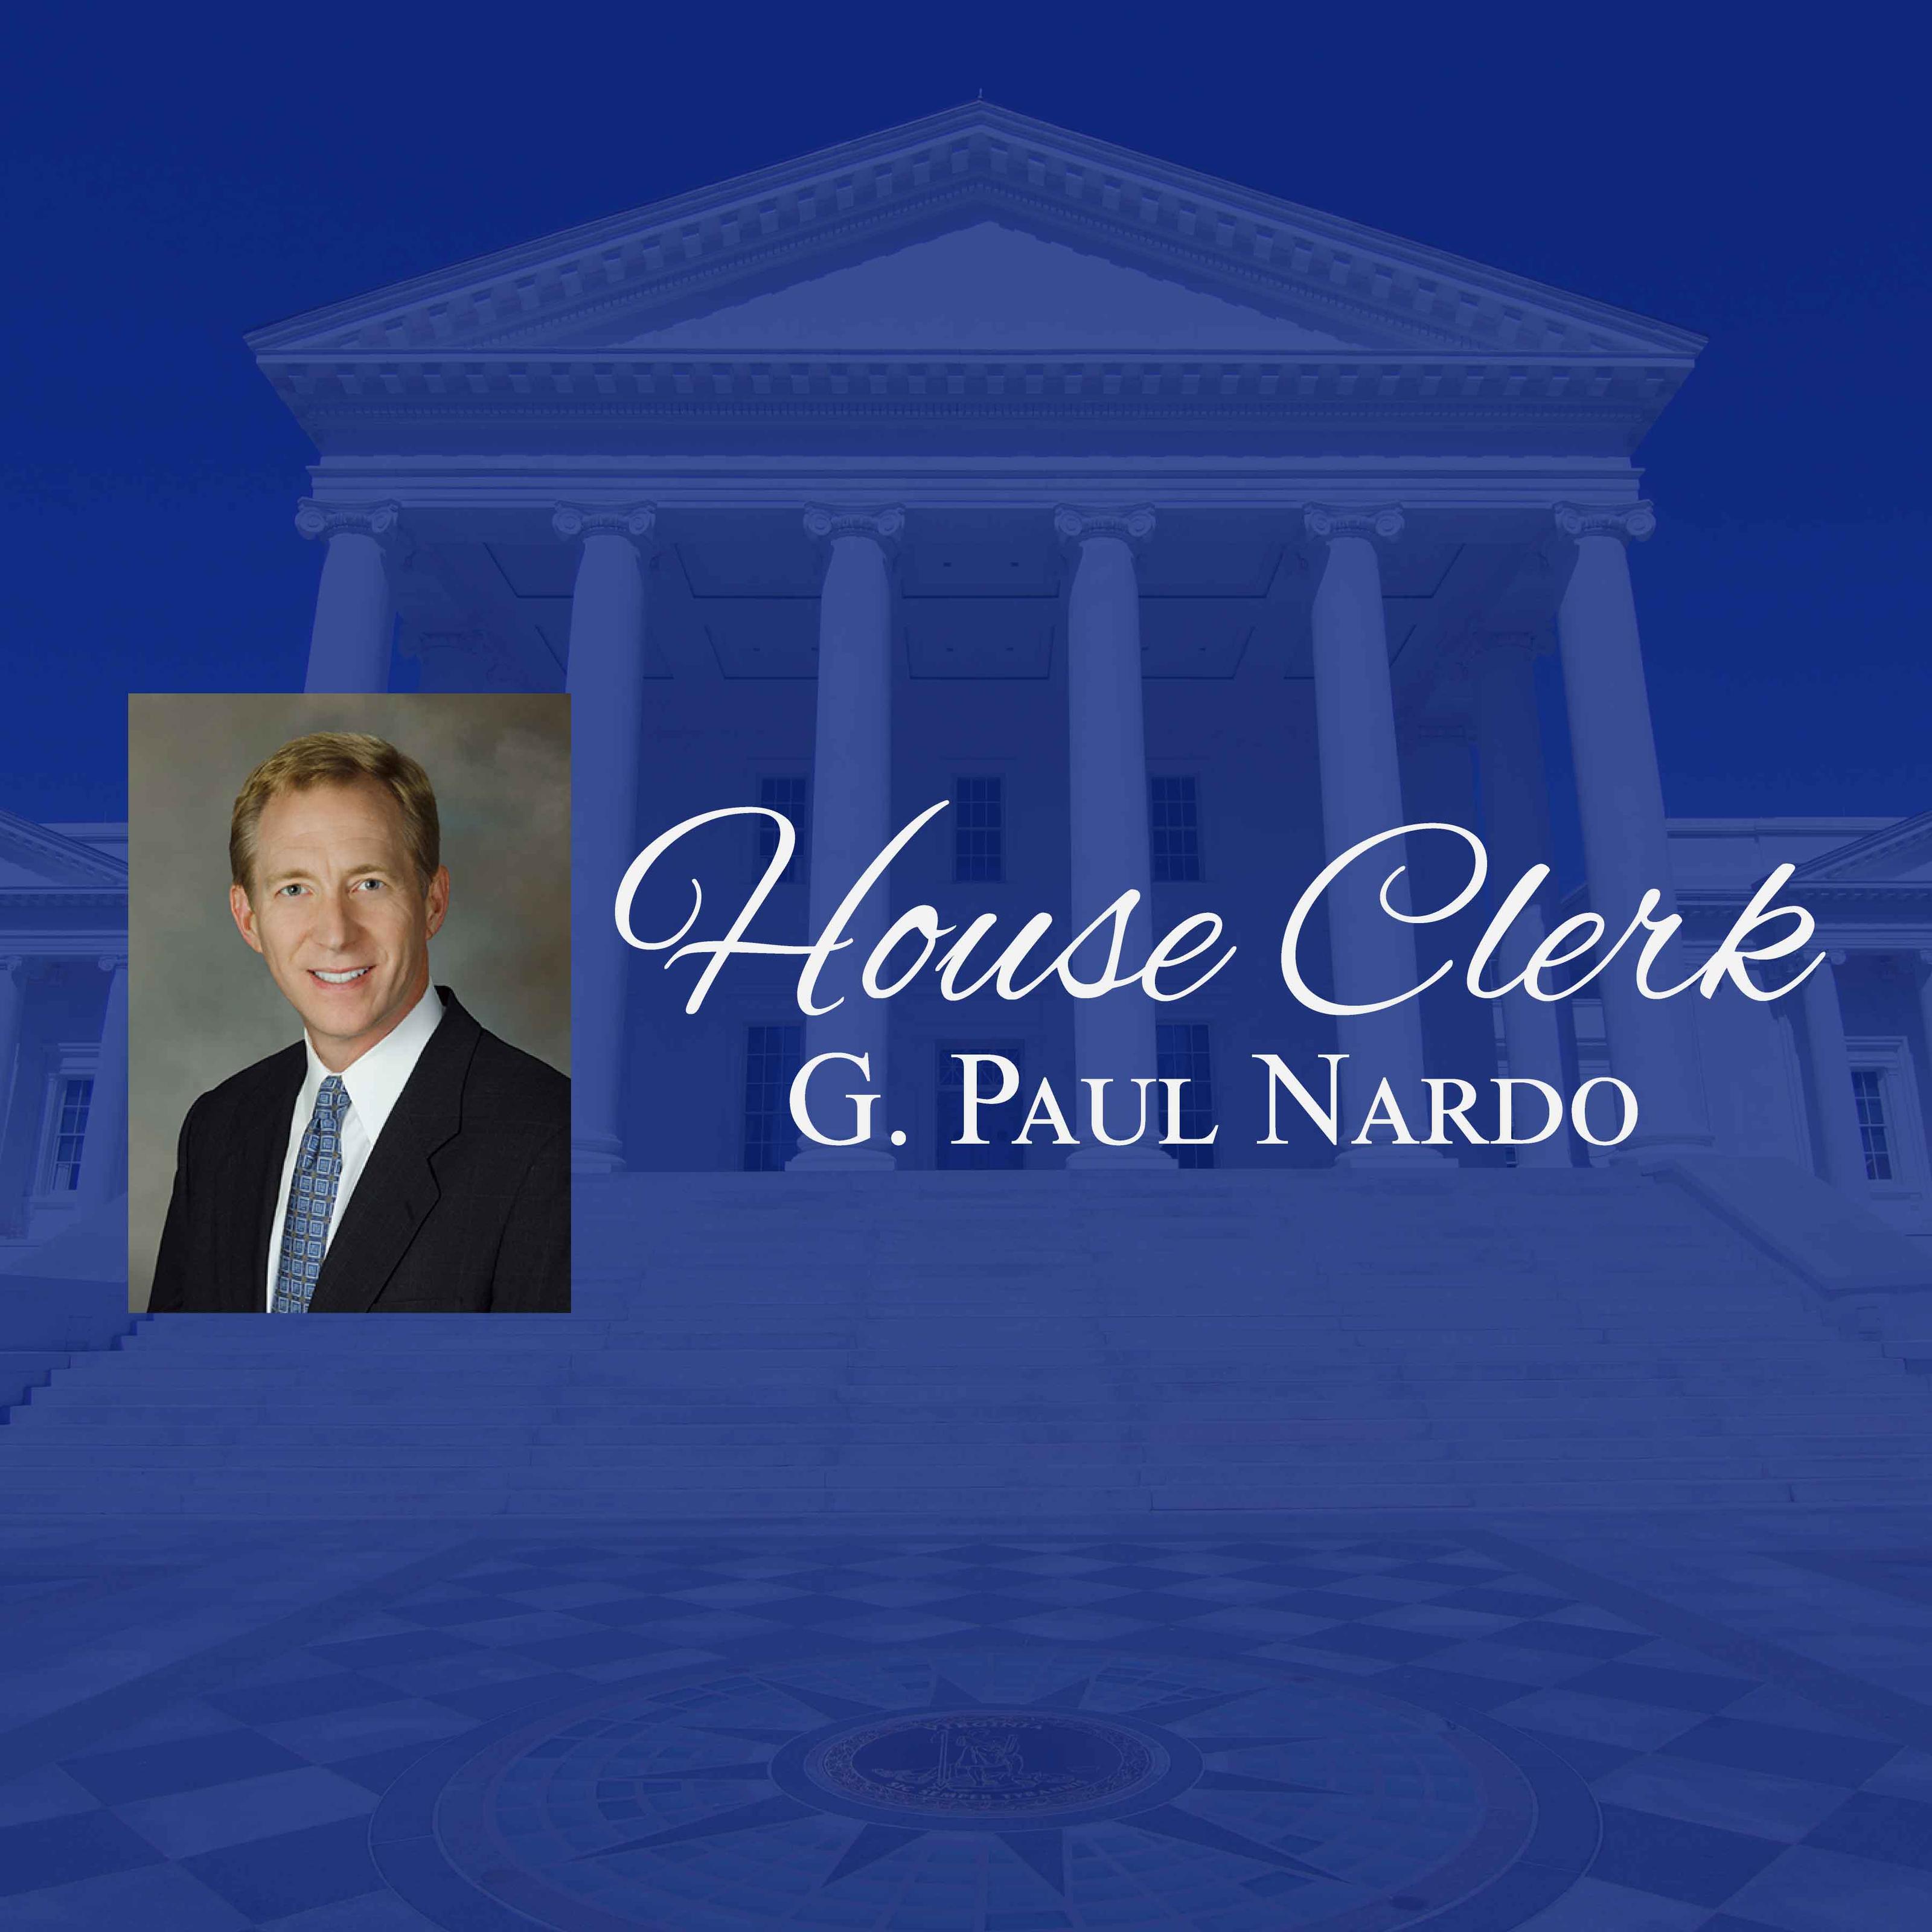 The Honorable G. Paul Nardo, House Clerk